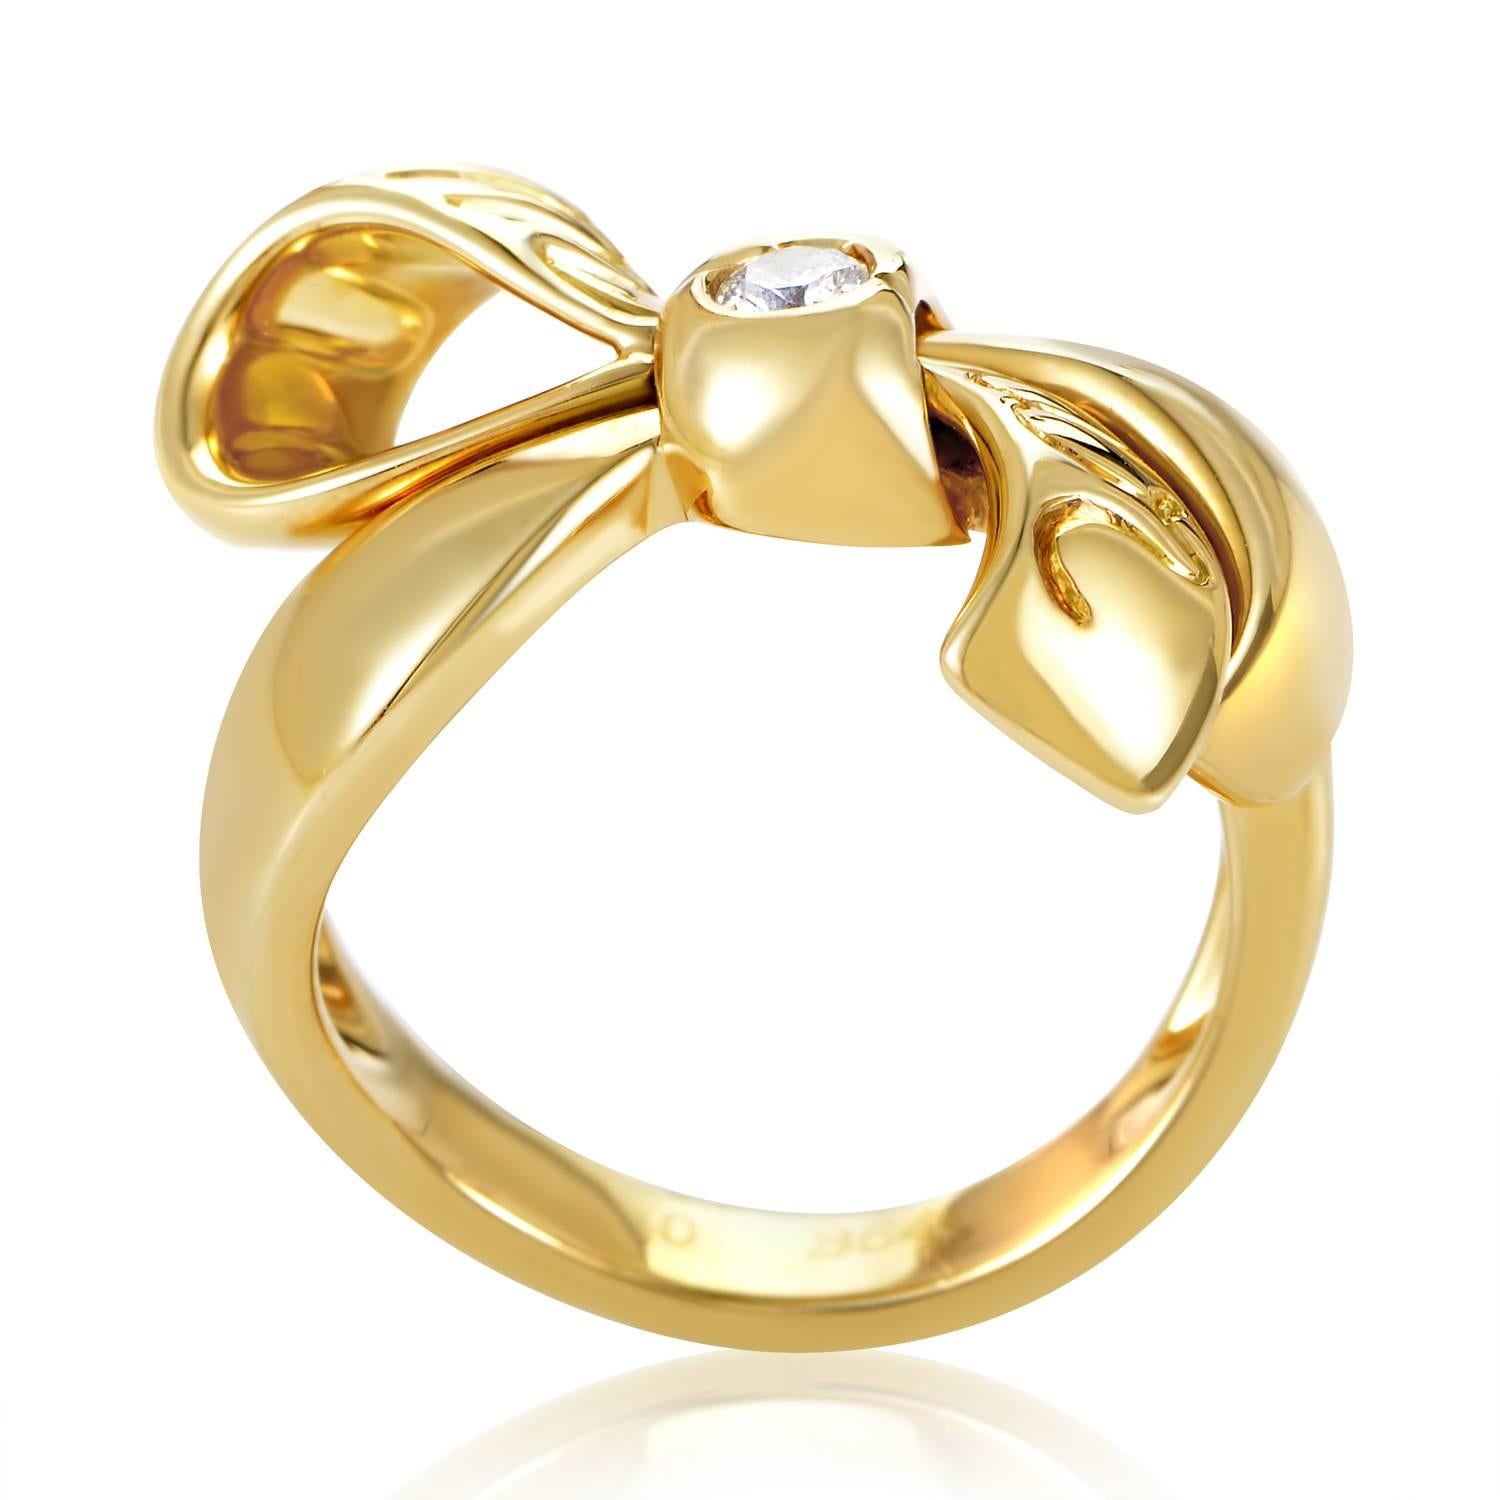 L'adorable design de cette délicate bague en or de Dior ne manquera pas de plaire. Forgée dans de l'or jaune 18 carats en forme de nœud délicat, la bague n'est ornée que d'un seul diamant de 0,10 ct.
Taille de l'anneau : 6.25
Dimensions de l'anneau